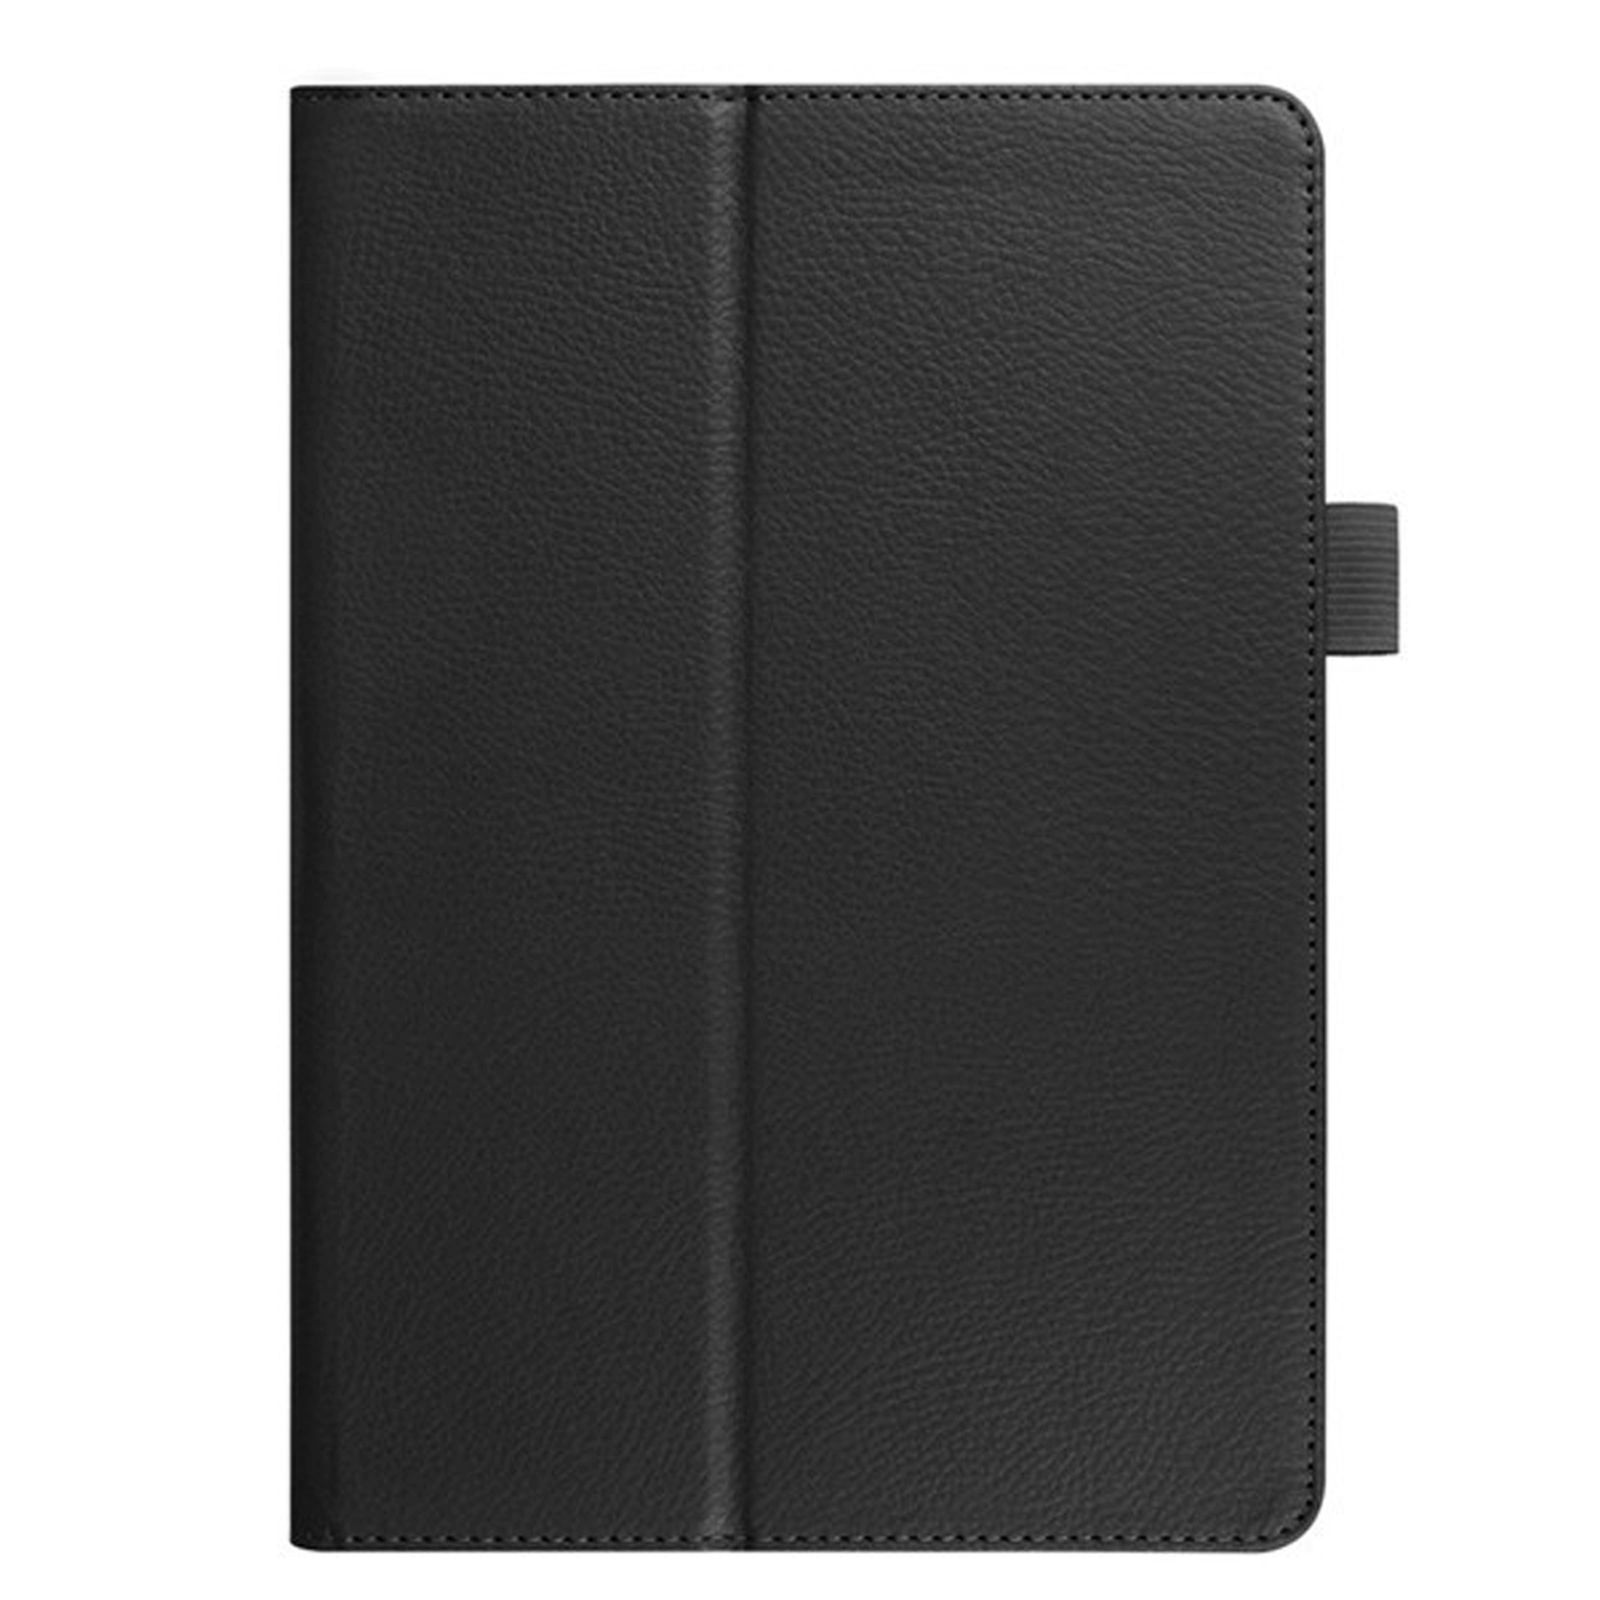 LOBWERK Hülle Schutzhülle Pro iPad Schwarz 2020 Apple 12.9 Kunstleder, Bookcover für